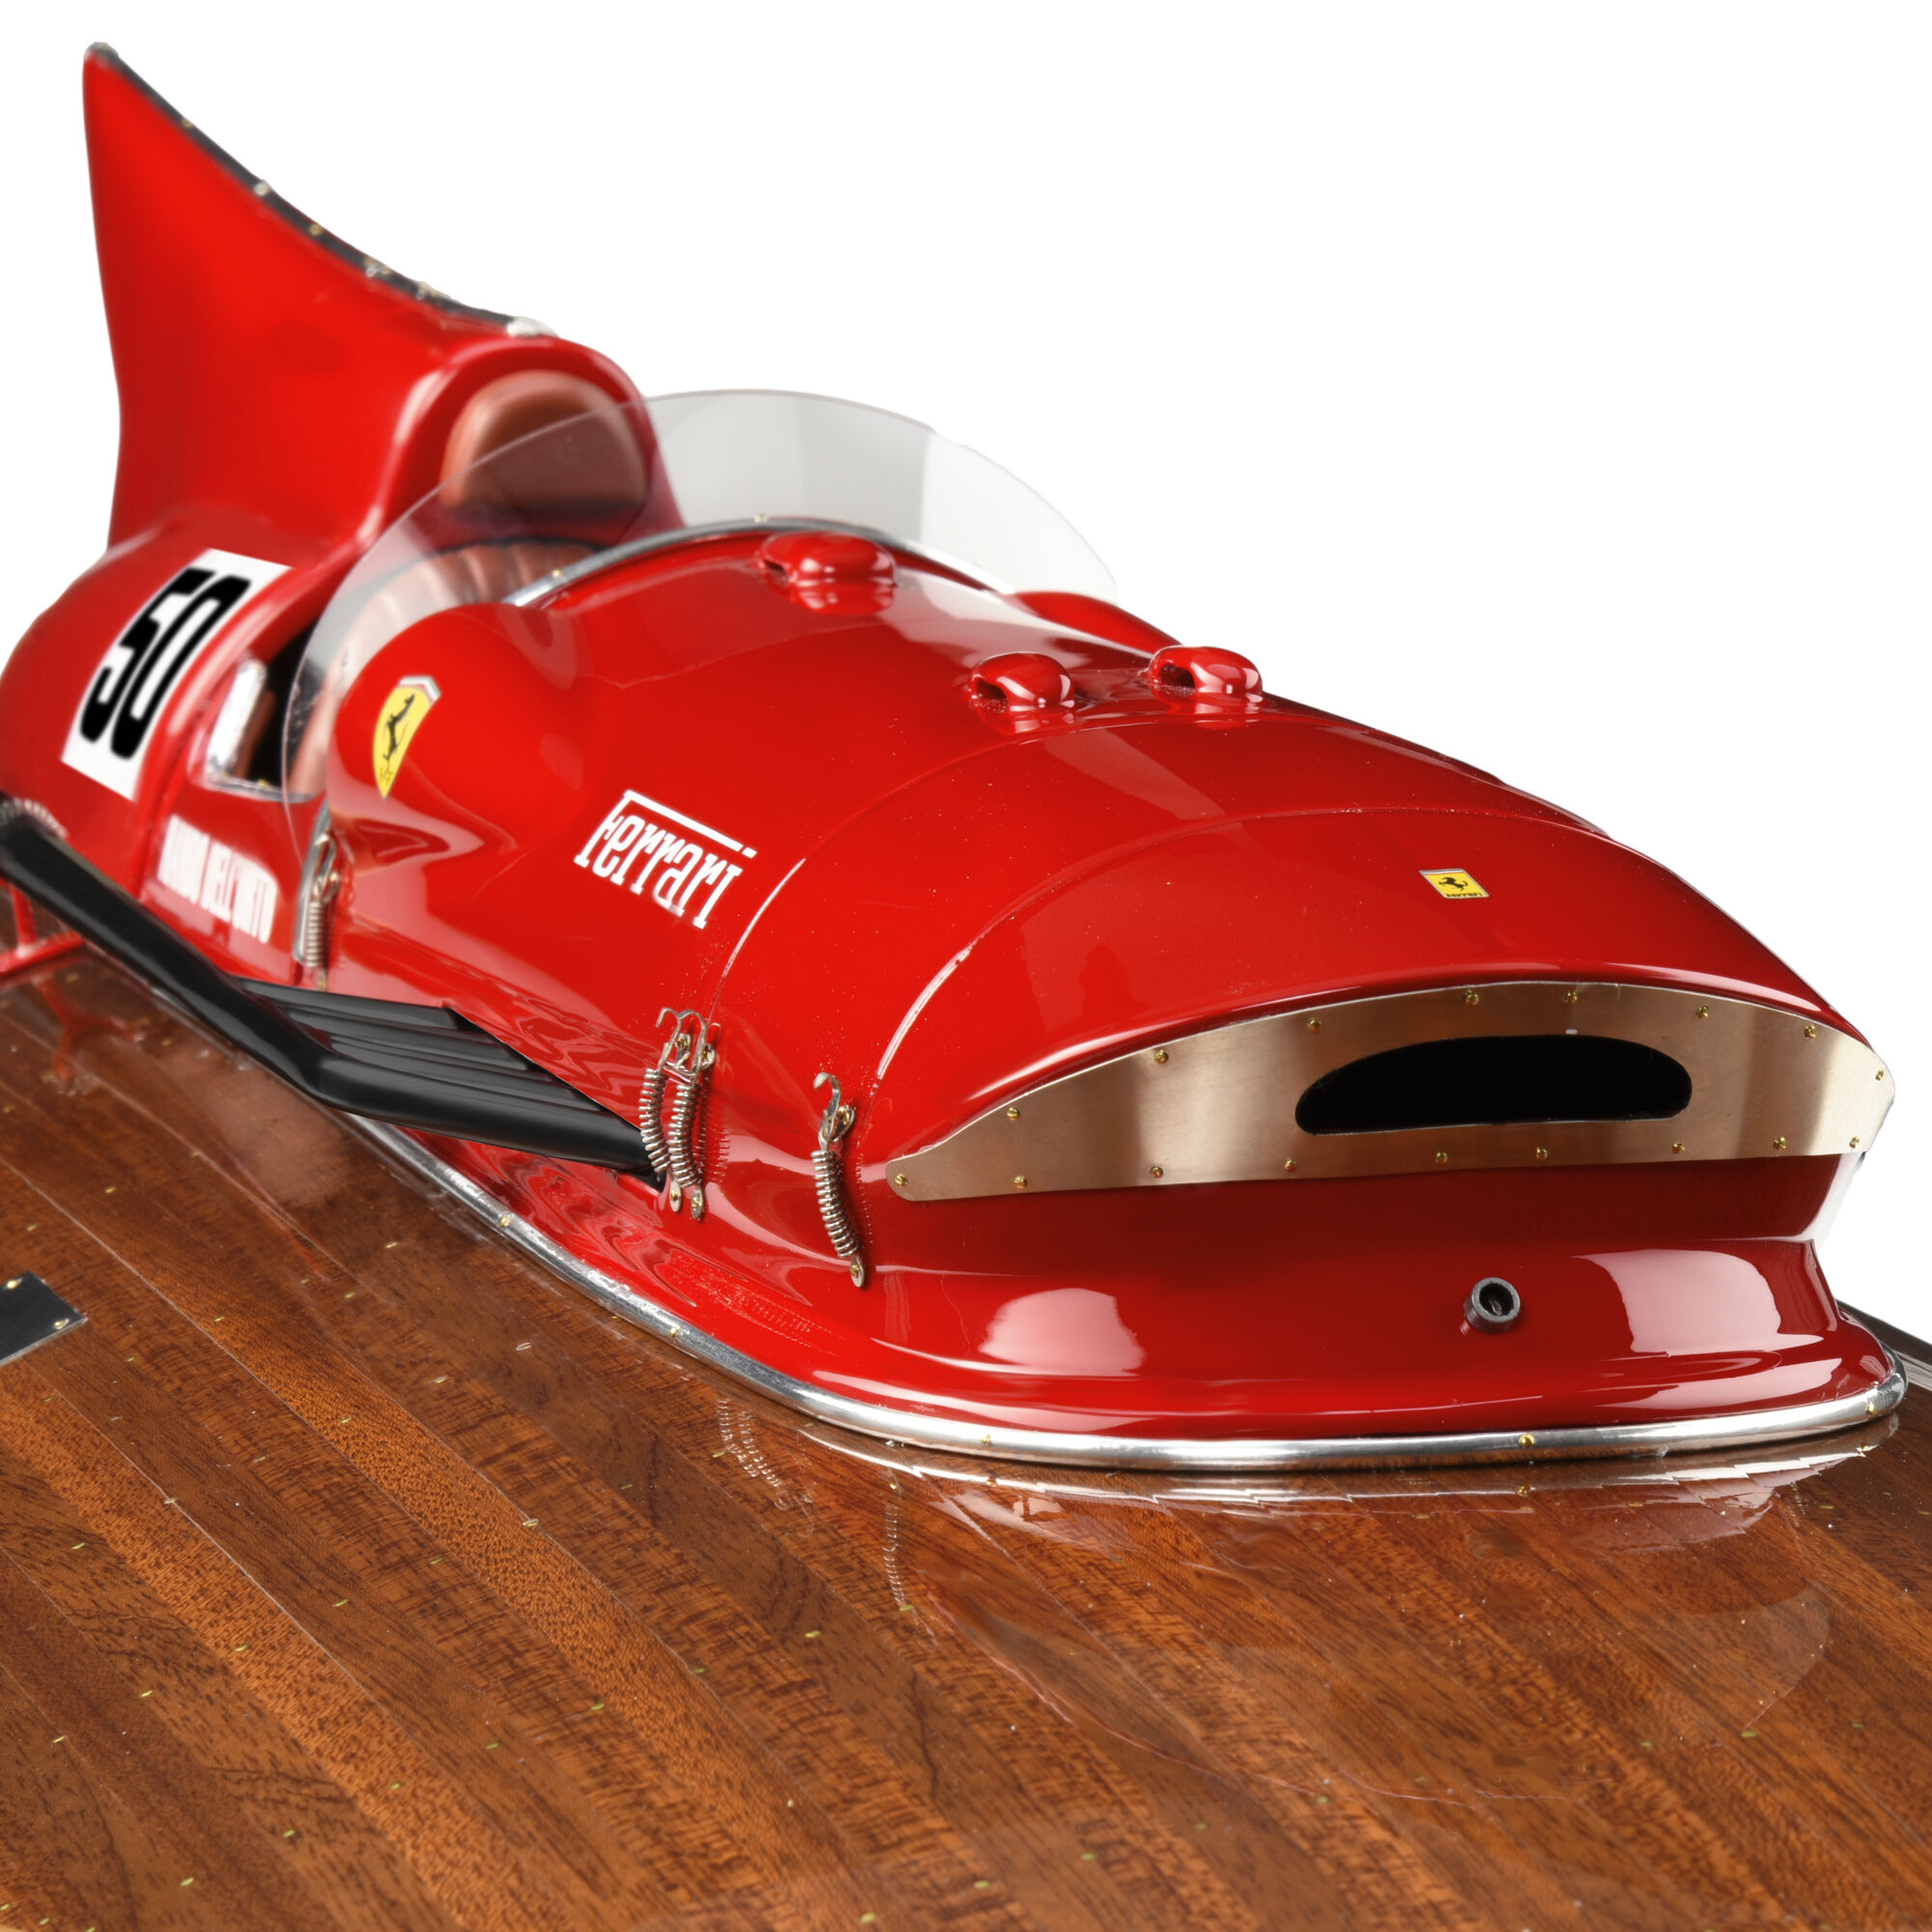 Ferrari Miniatura lancha Arno XI a escala 1:8 en edición limitada MULTICOLOR 40610f